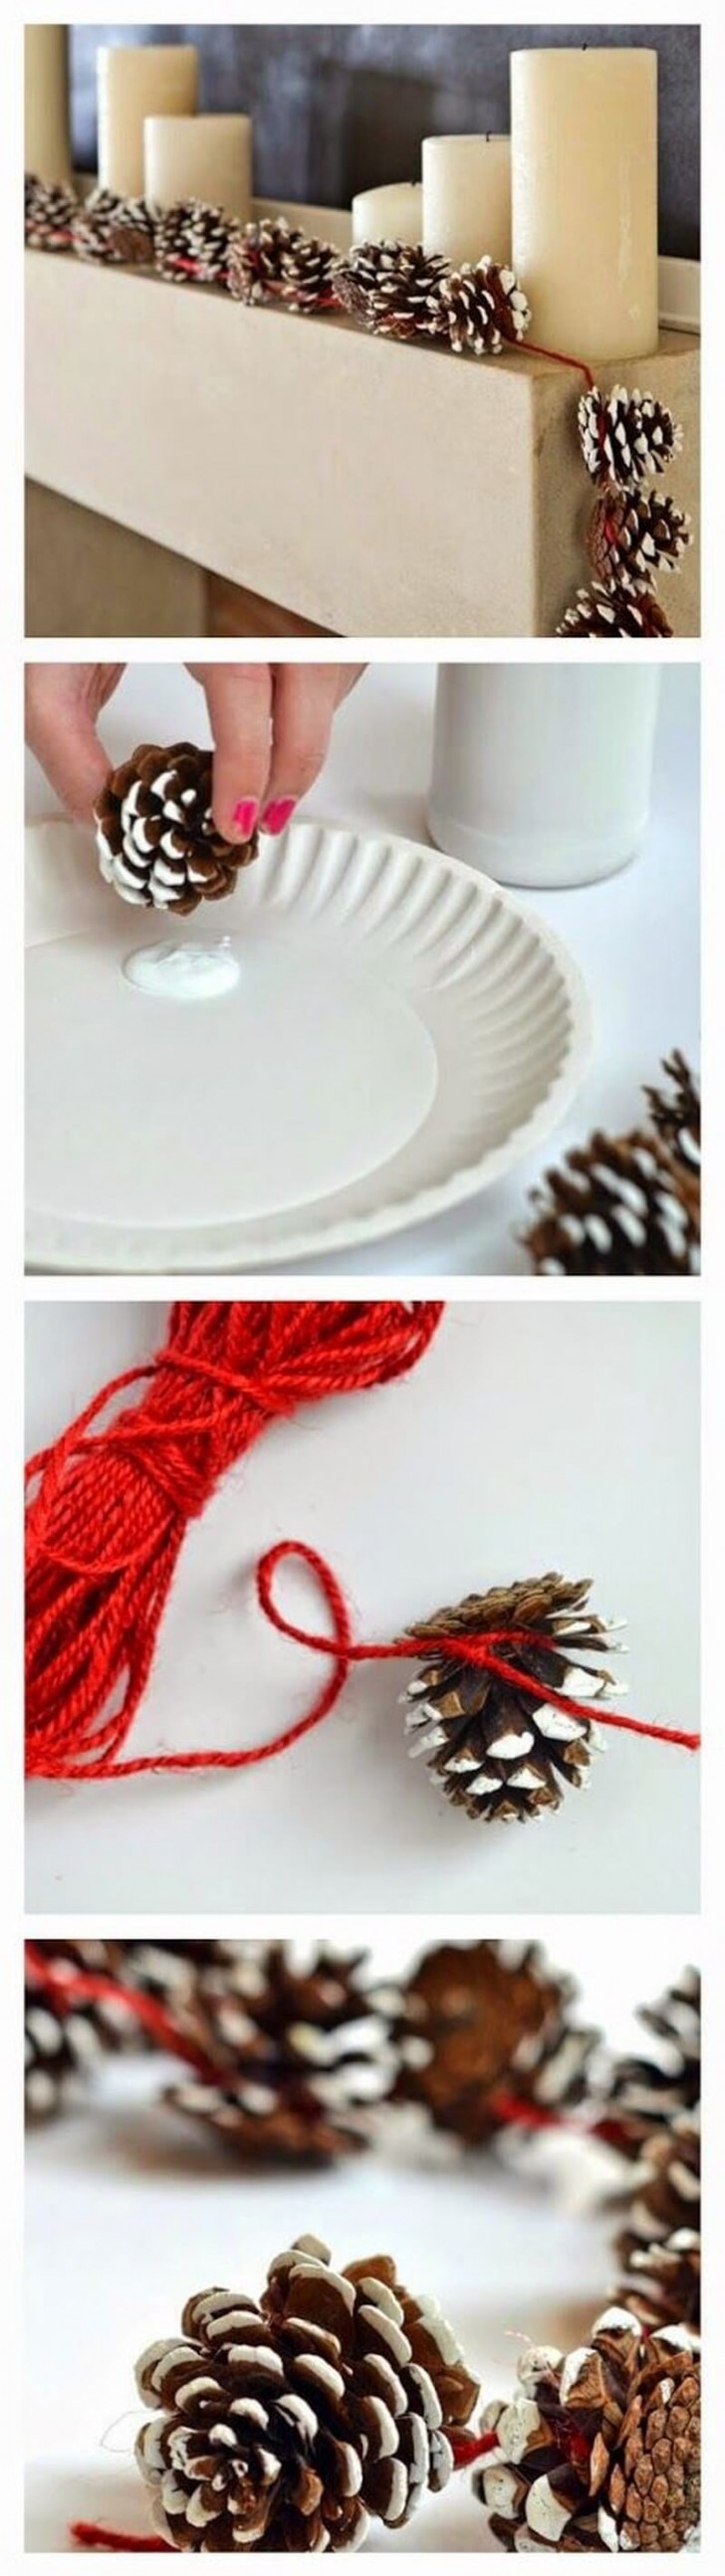 6. Une autre idée sympa pour les petites pommes de pin : peintes en blanc ou avec de la fausse neige et attachées avec un fil de laine rouge pour créer une guirlande